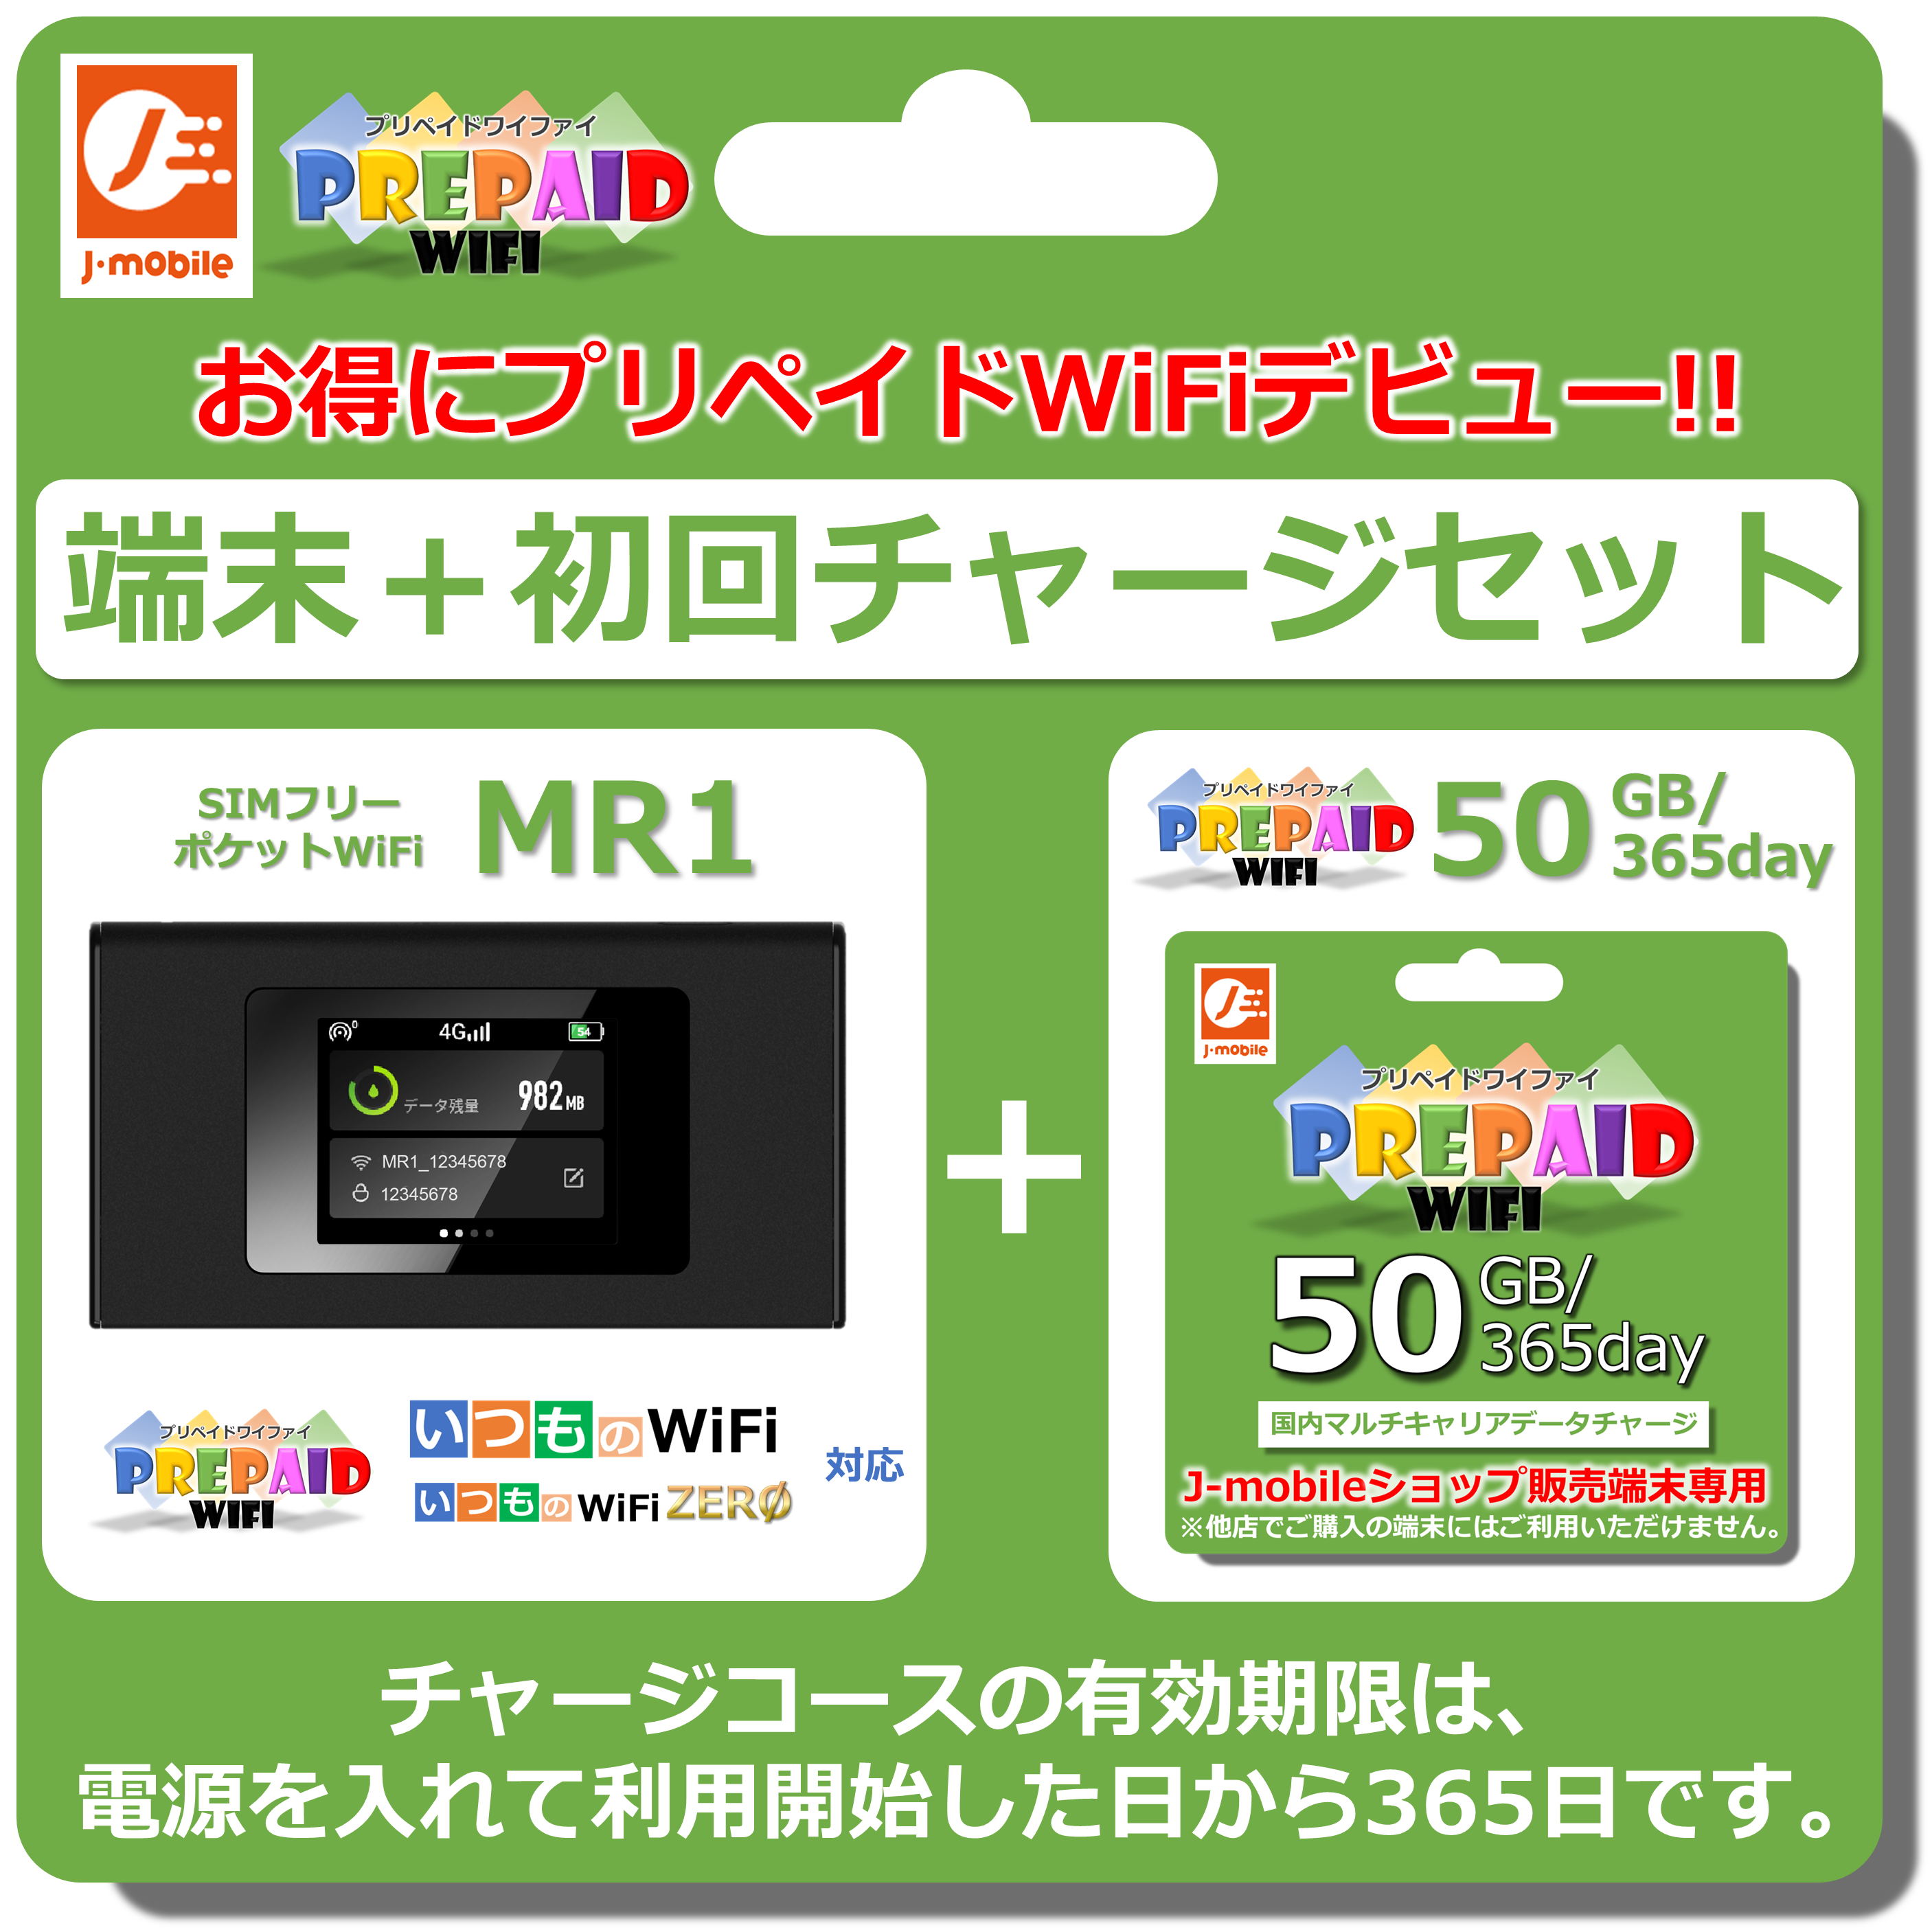 MR1 pocket WiFi body plipeidoWiFi50GB/365day set 